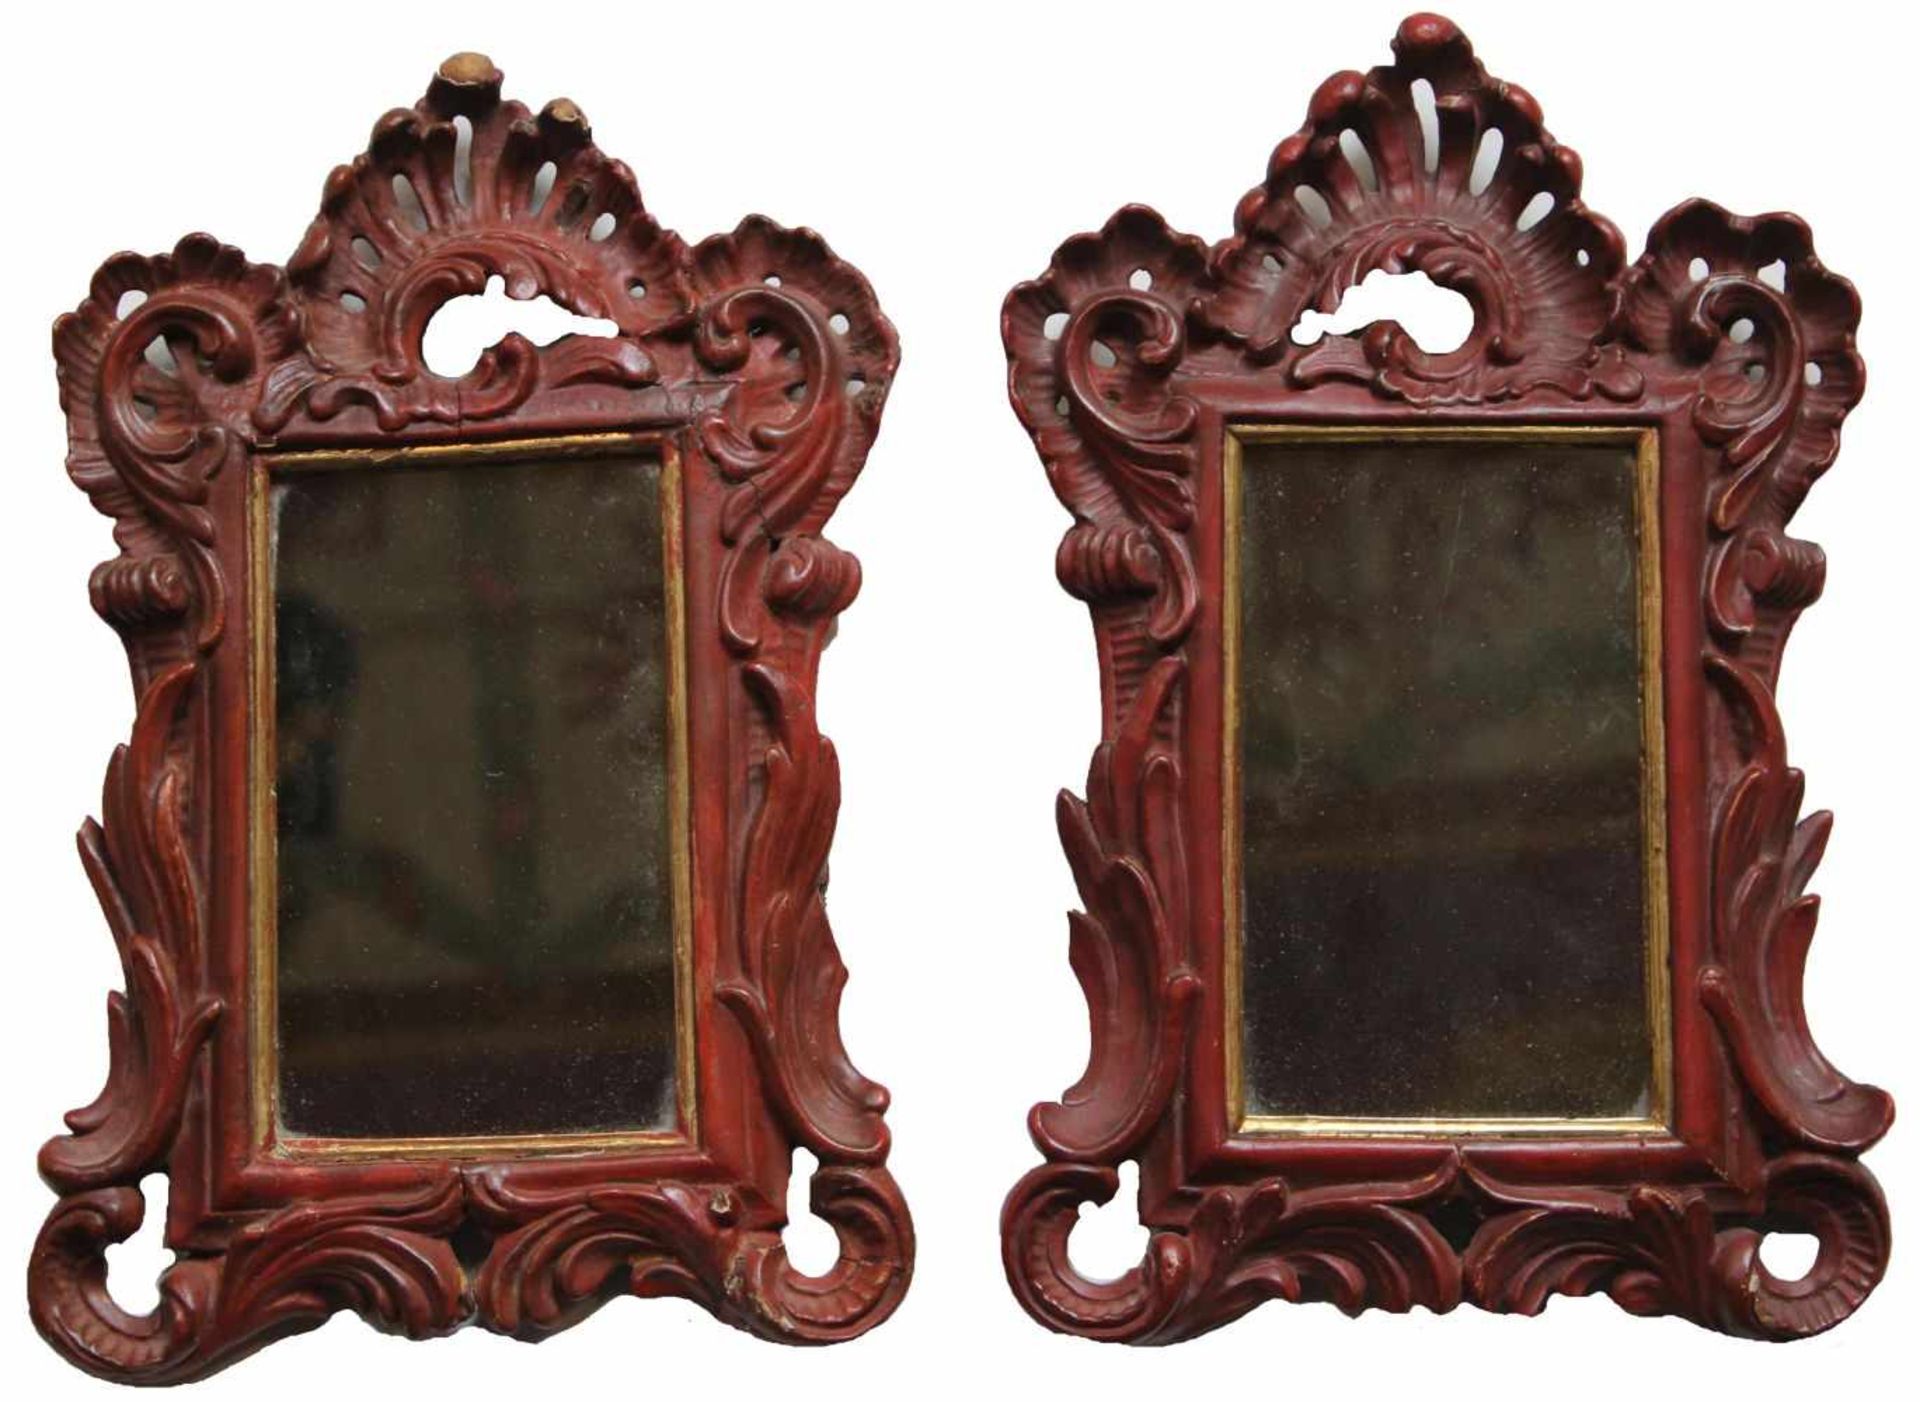 Paar kl. Spiegel - Barock 18./19.Jahrhundert wohl ehem. Canontafeln, Holz geschnitzt und gefaßt,